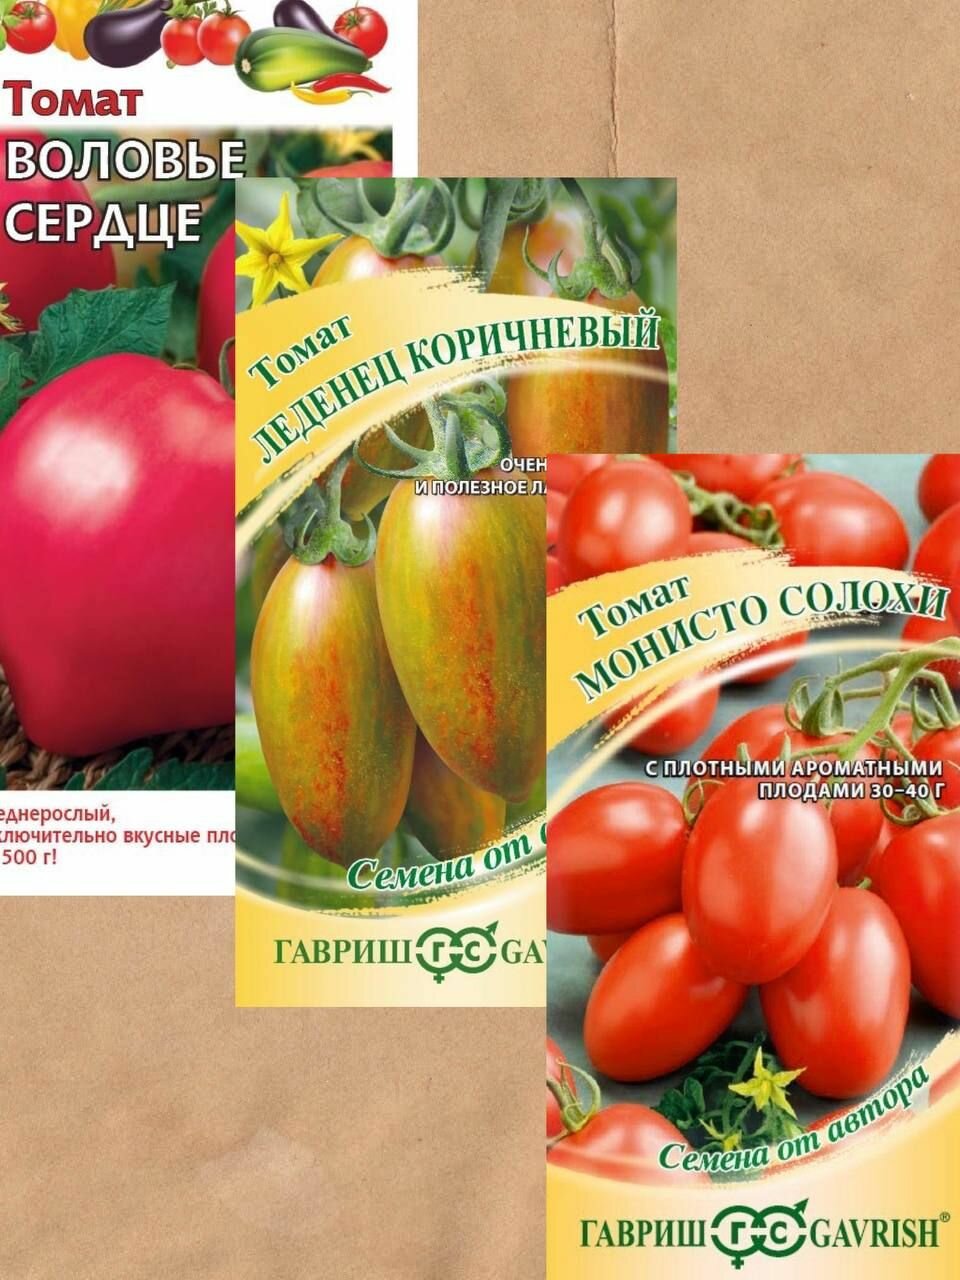 Семена томатов Гавриш 3 уп.+ Подарок!